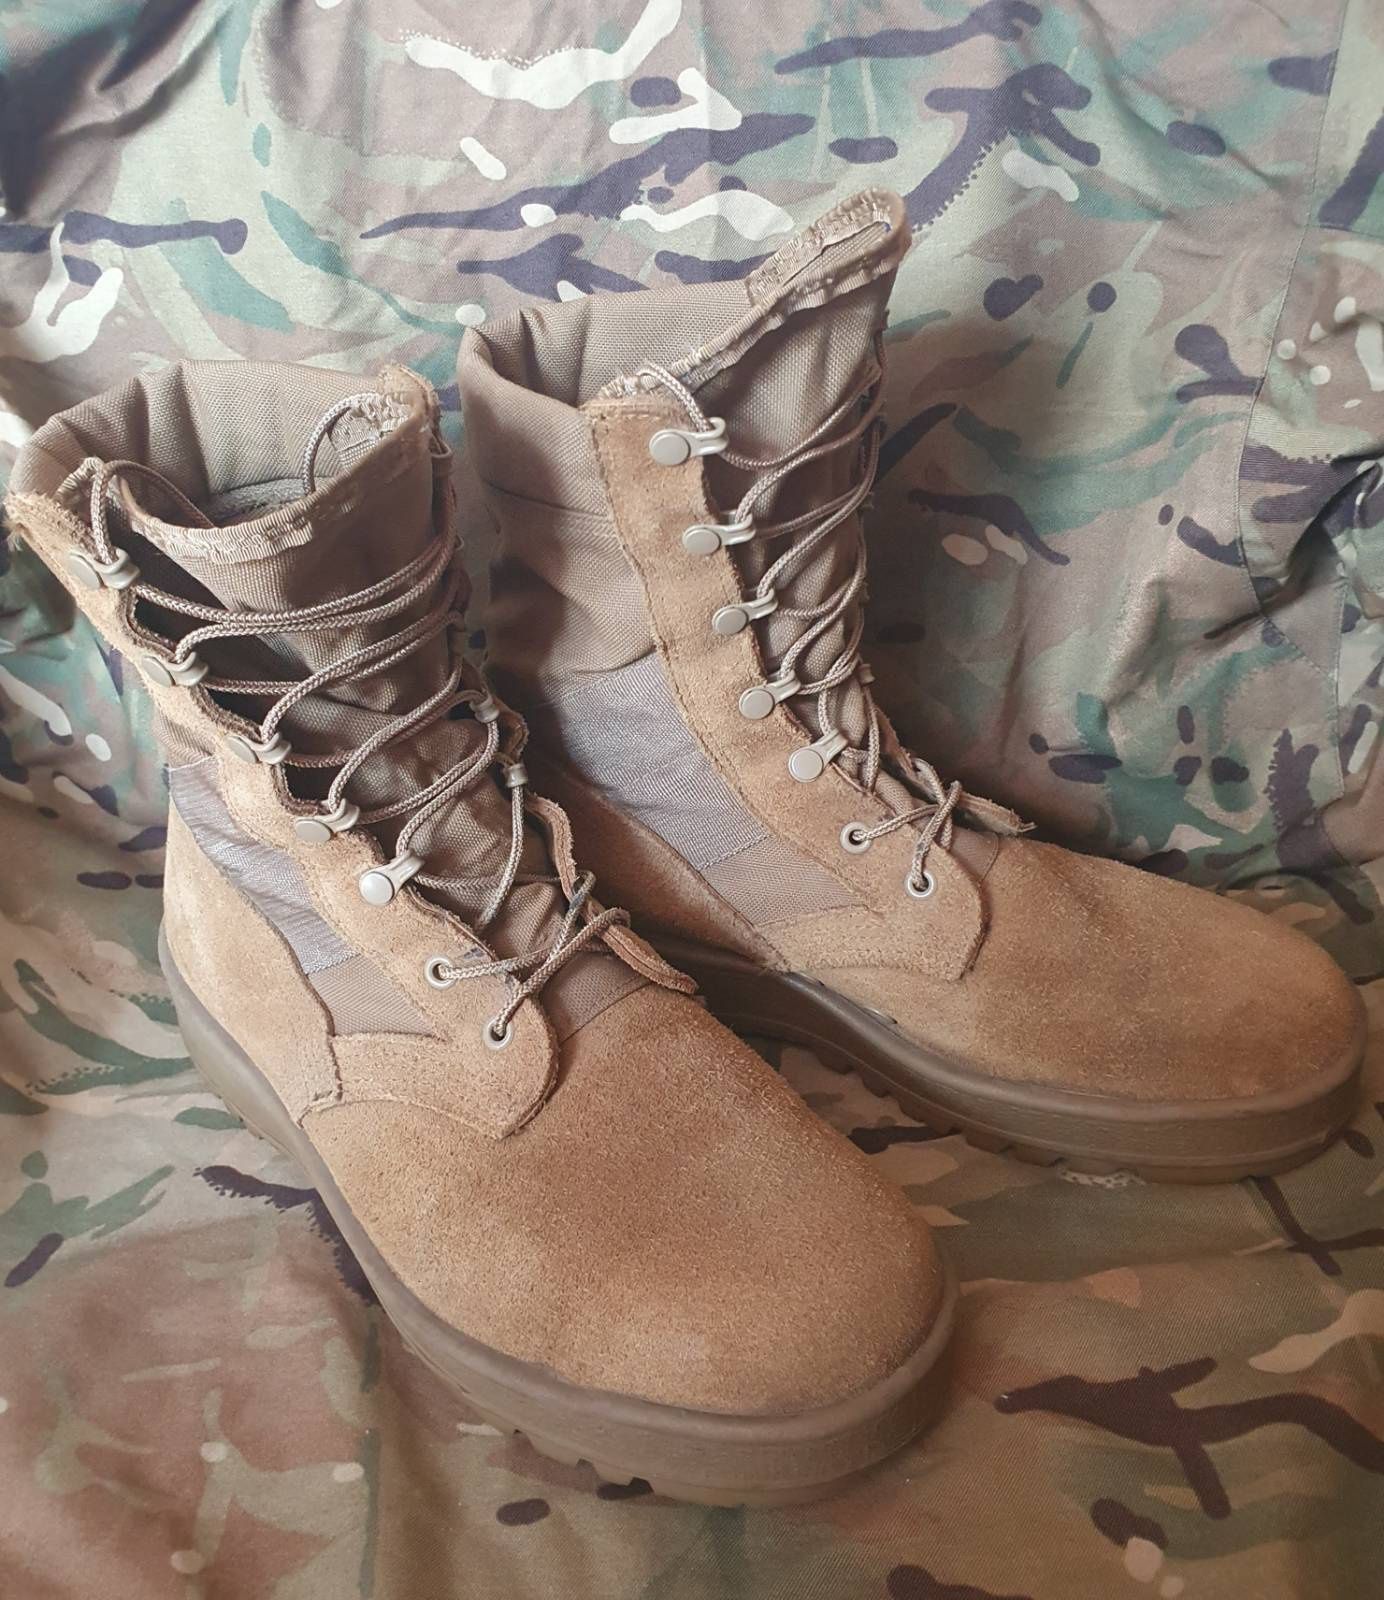 Летние берцы армии США Altama 10 W, Hot Weather Boots